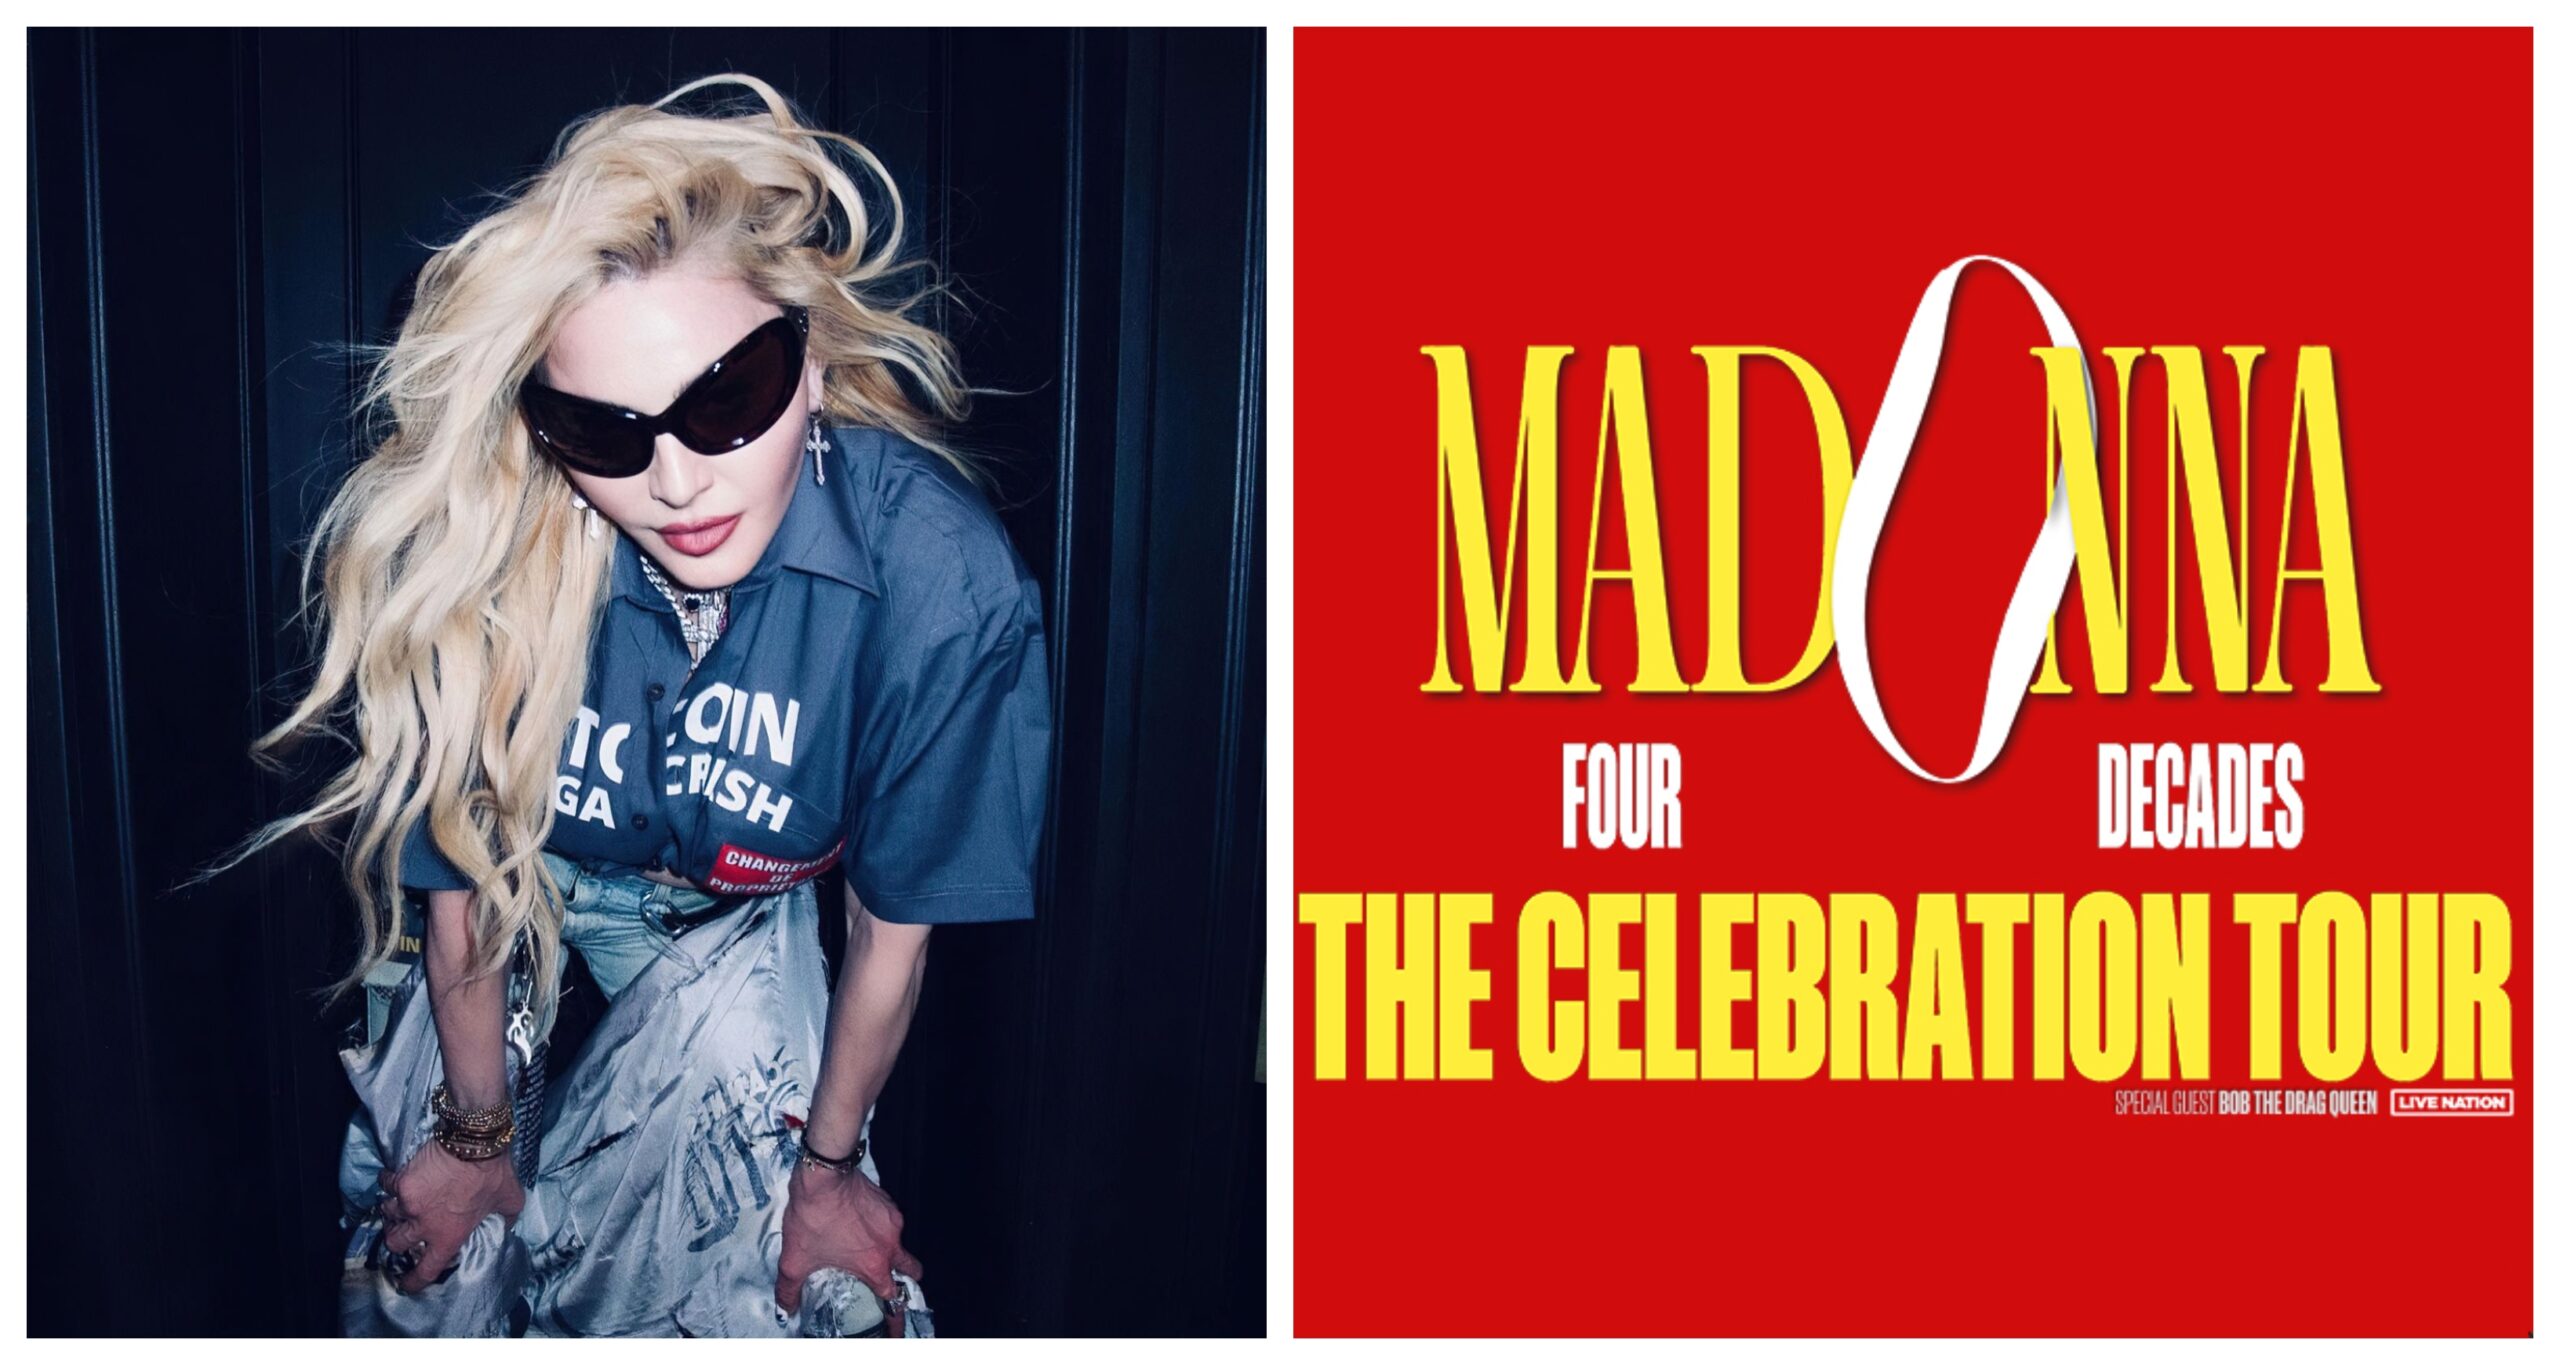 She's Back! Madonna Announces 'The Celebration Tour' / Reveals Dates